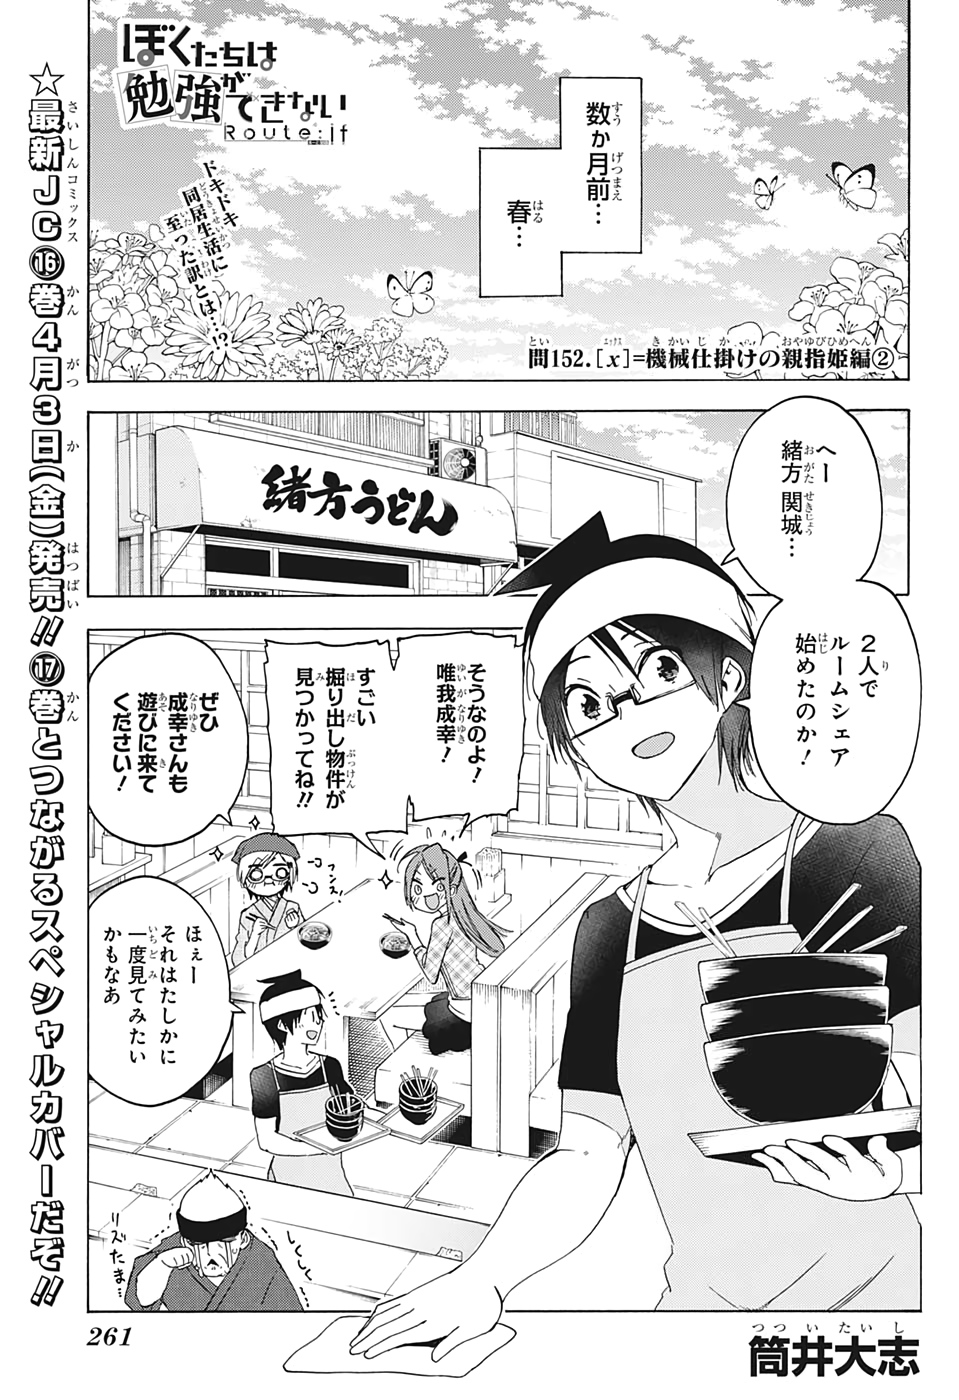 Bokutachi wa Benkyou ga Dekinai - Chapter 152 - Page 1